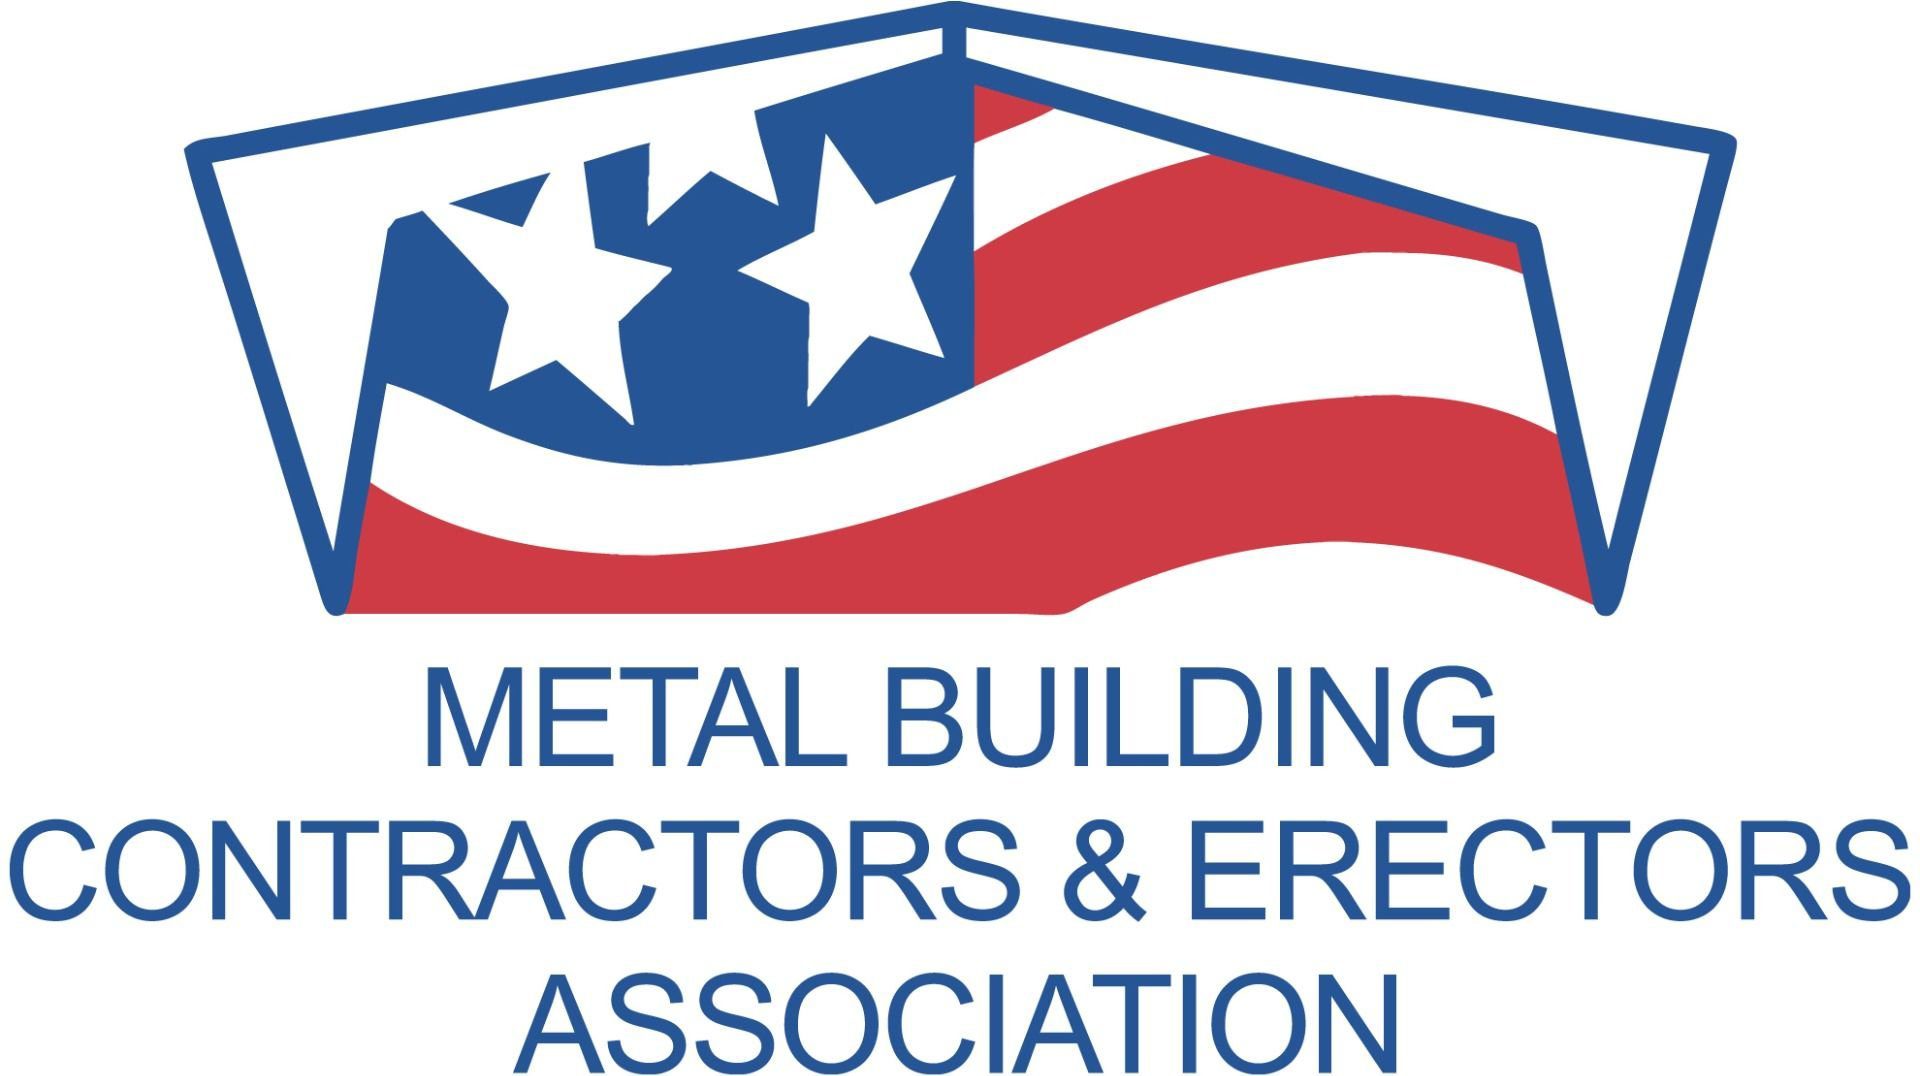 A logo of the metal building contractors and erectors association.